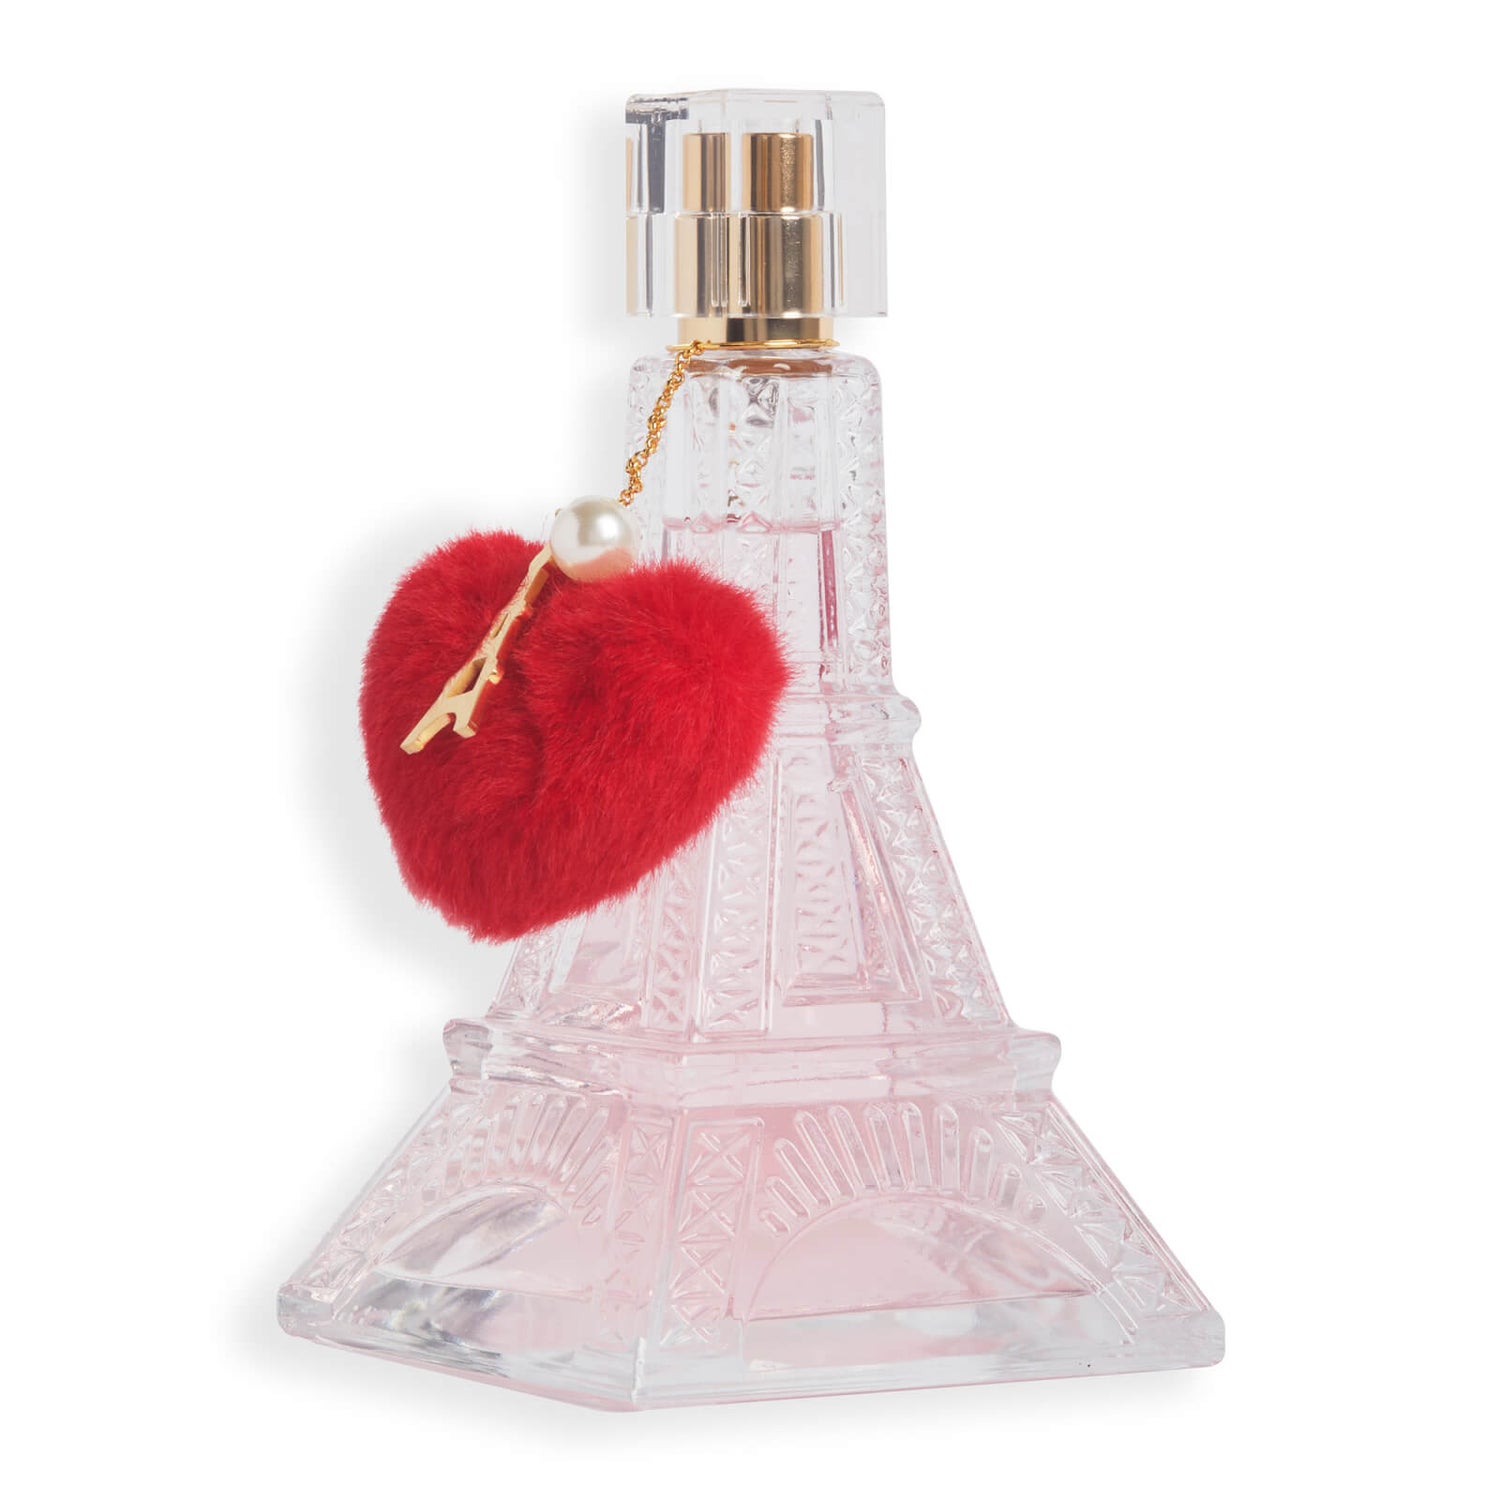 Strawberry Kisses Oil for Love & Romance